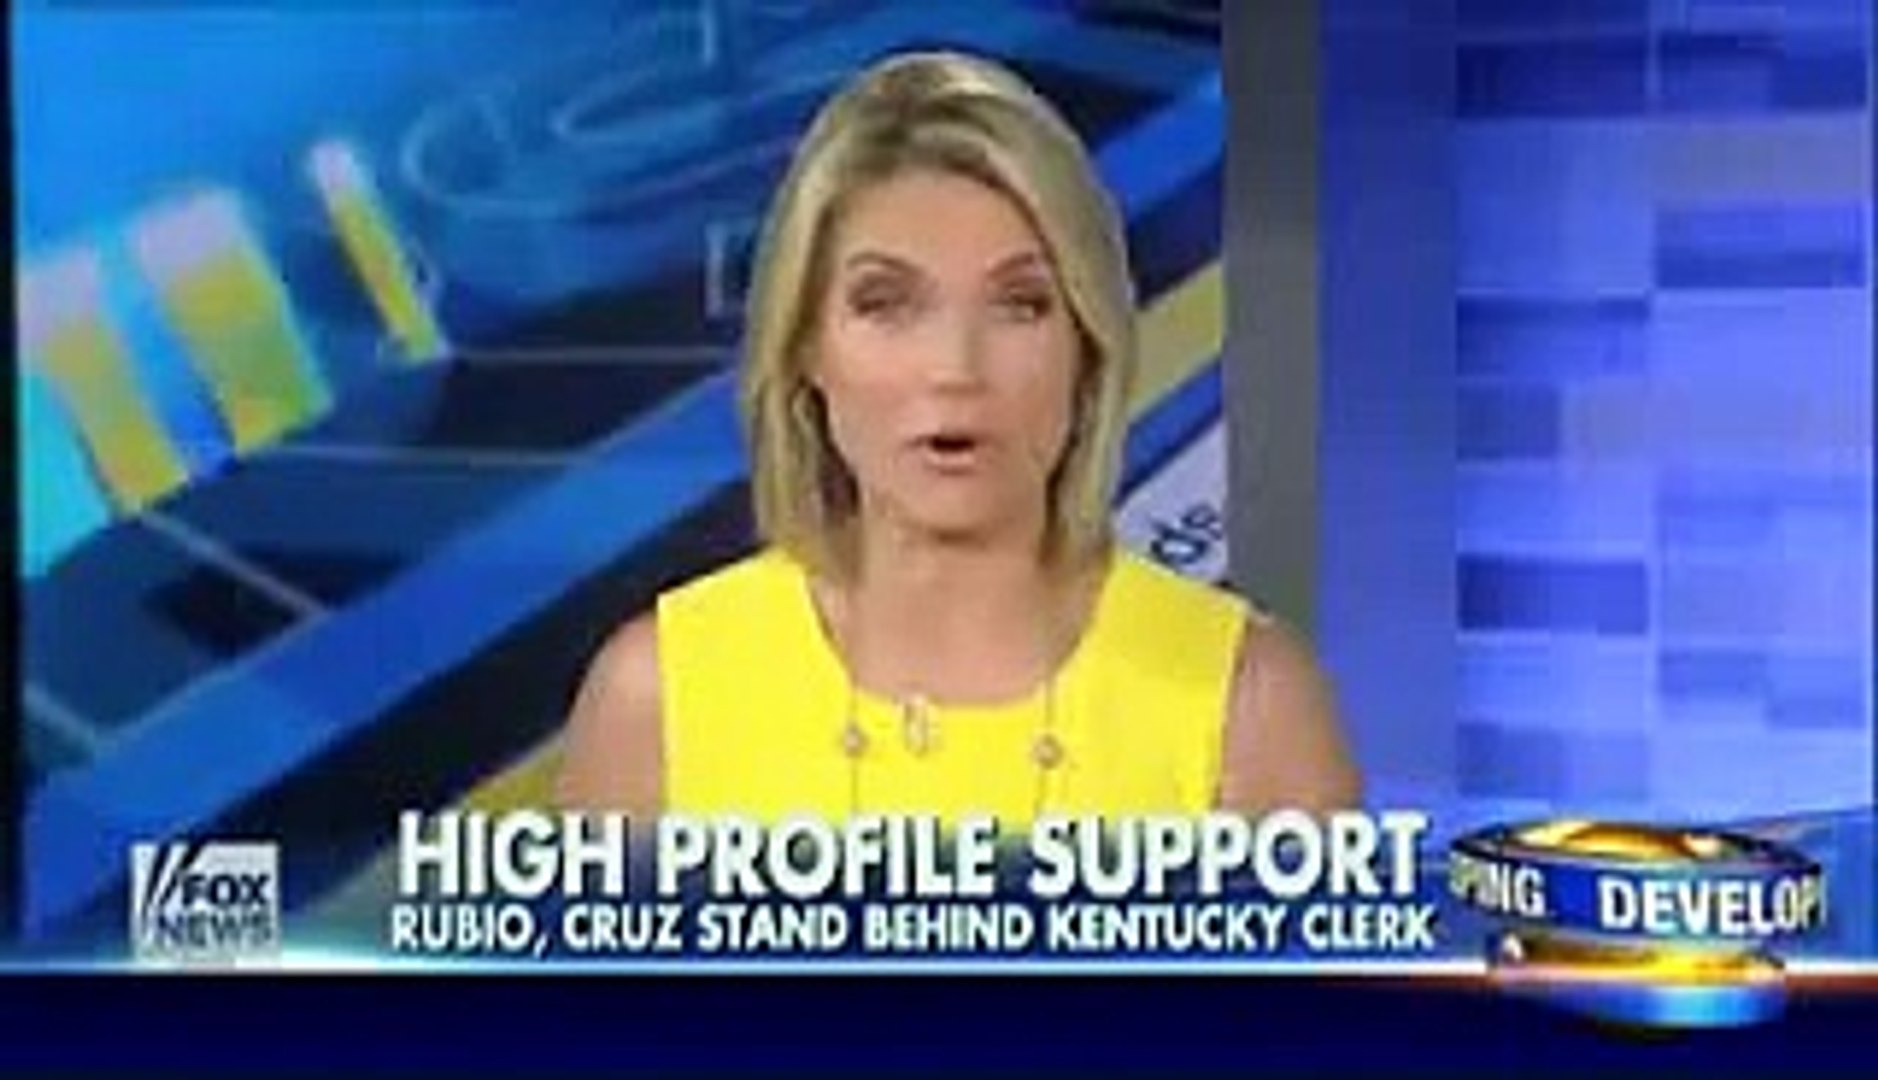 ⁣Rubio, Cruz stand behind Kentucky clerk - FoxTV Political News